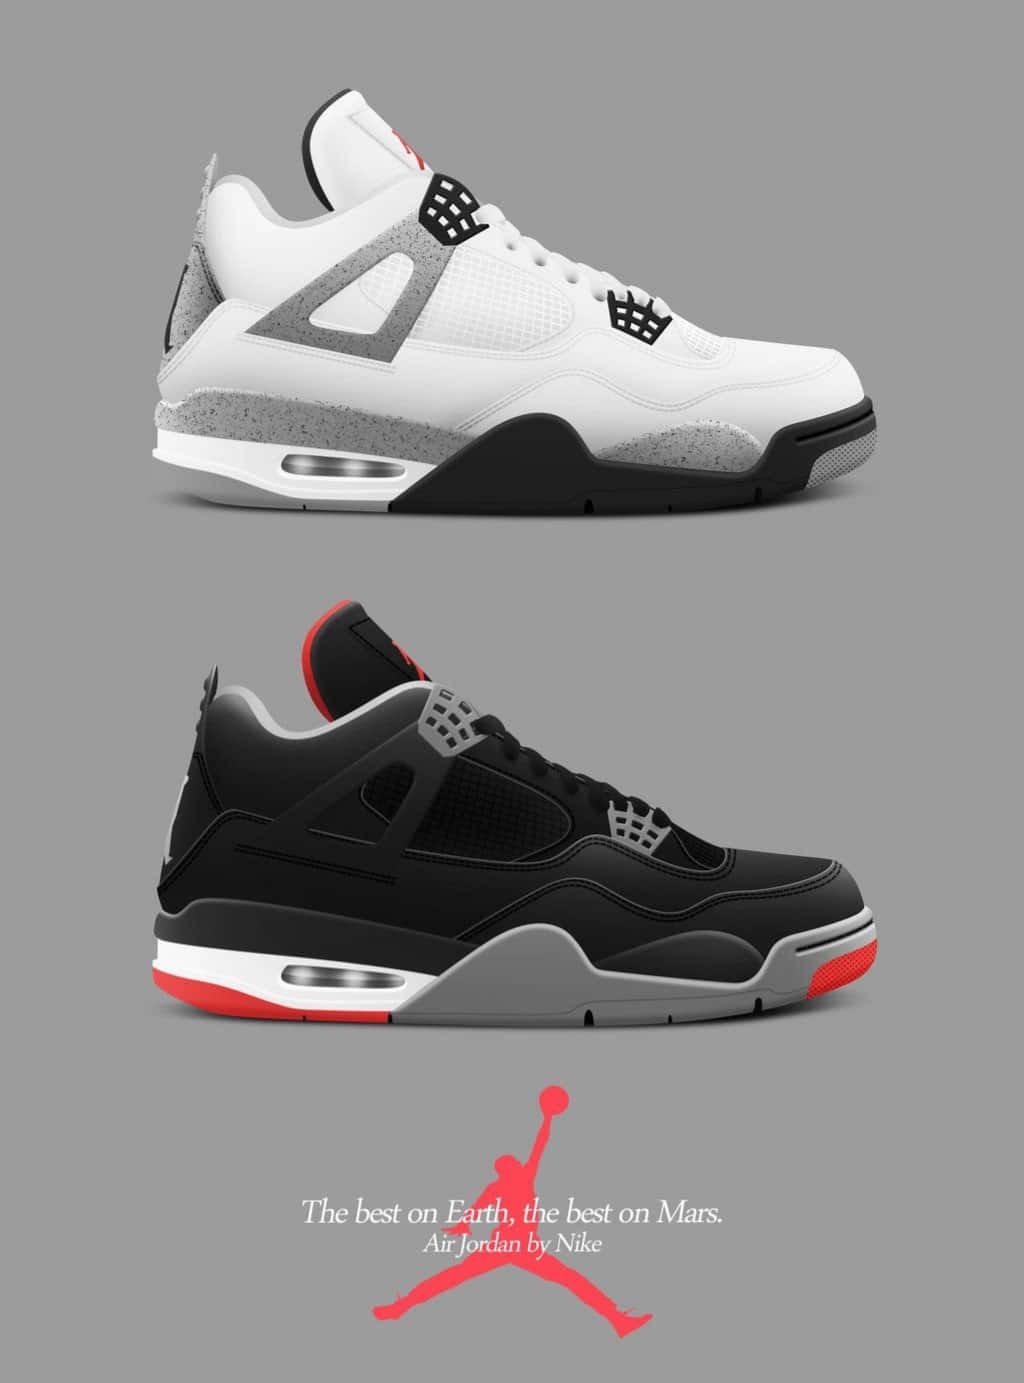 Air Jordan 4 Sort & Hvid Nike Plakat Wallpaper